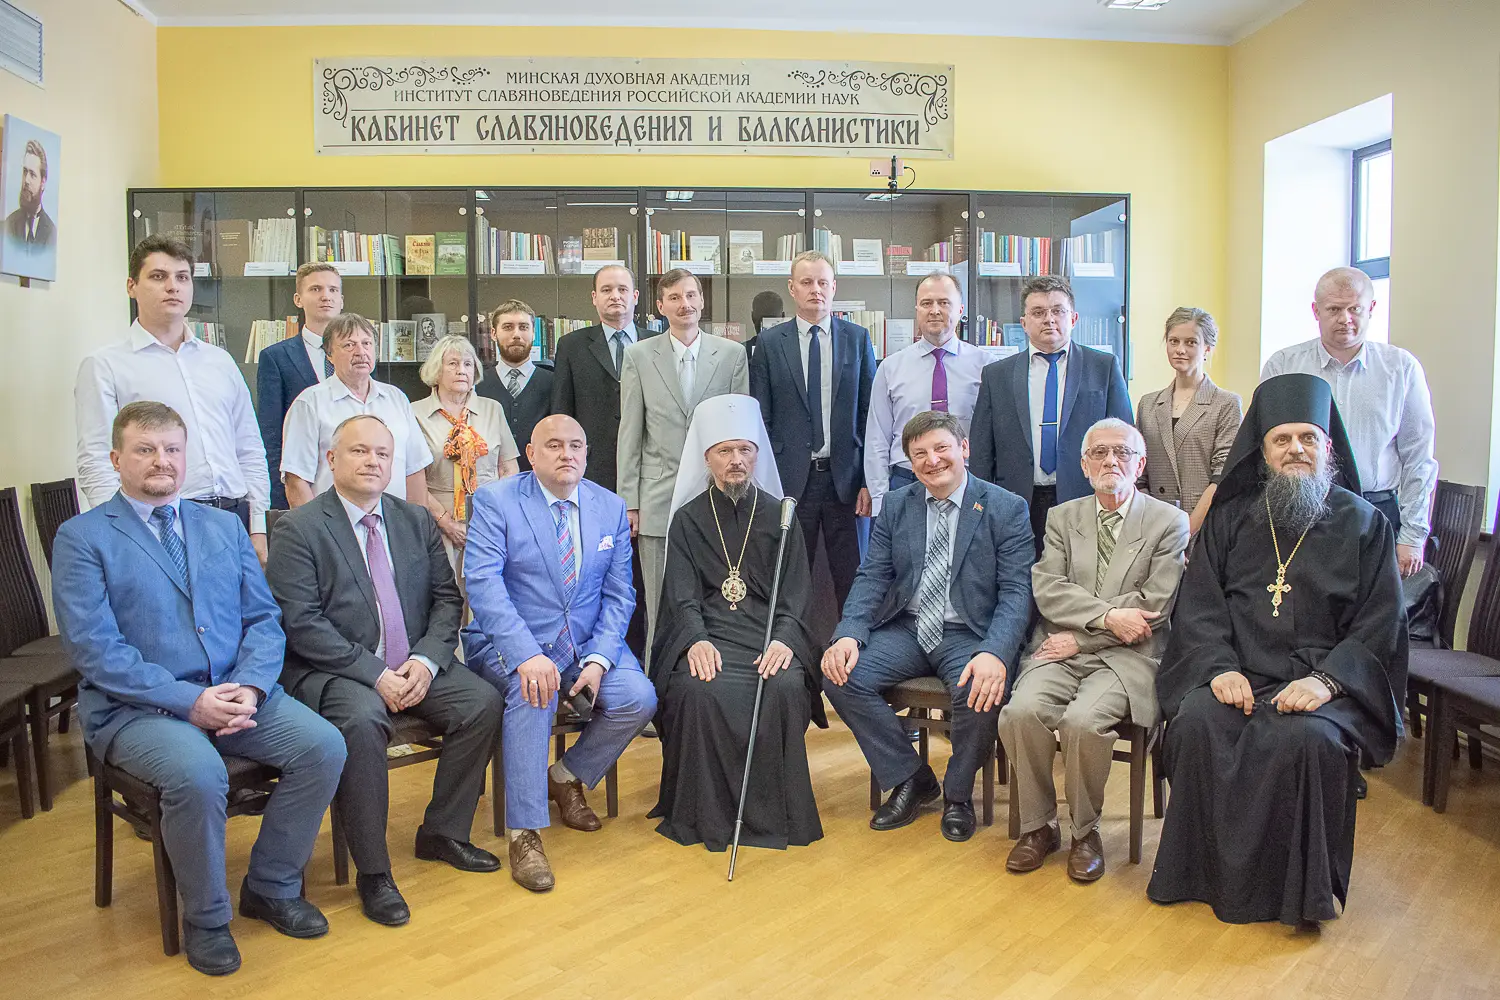 Кабинет славяноведения и балканистики открыт в Минской духовной академии